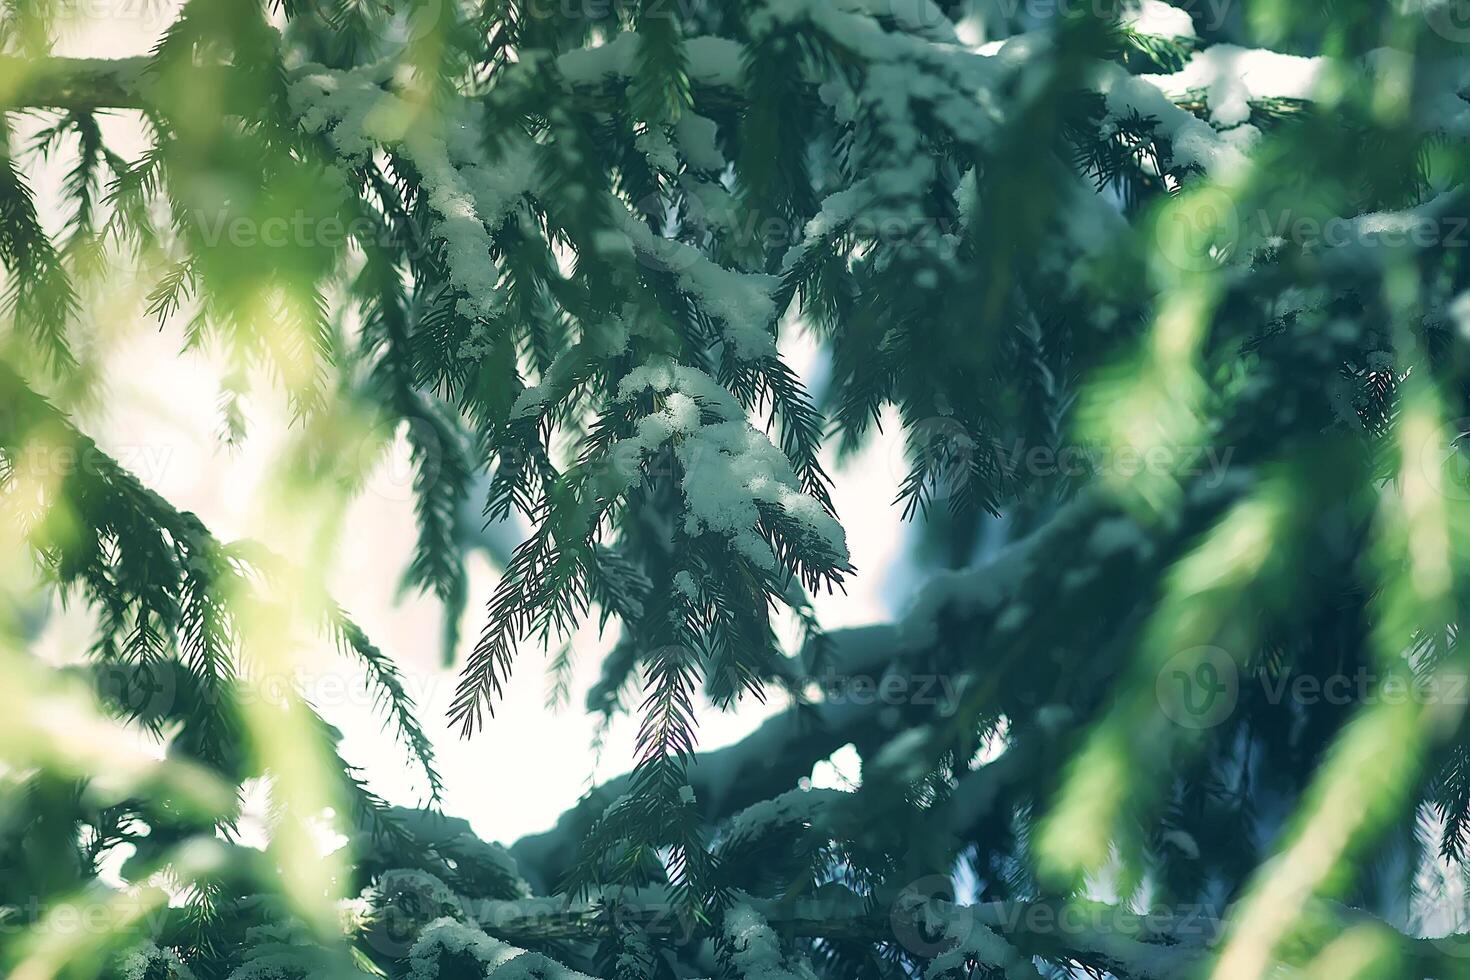 nieve cubierto abeto árbol ramas al aire libre. foto